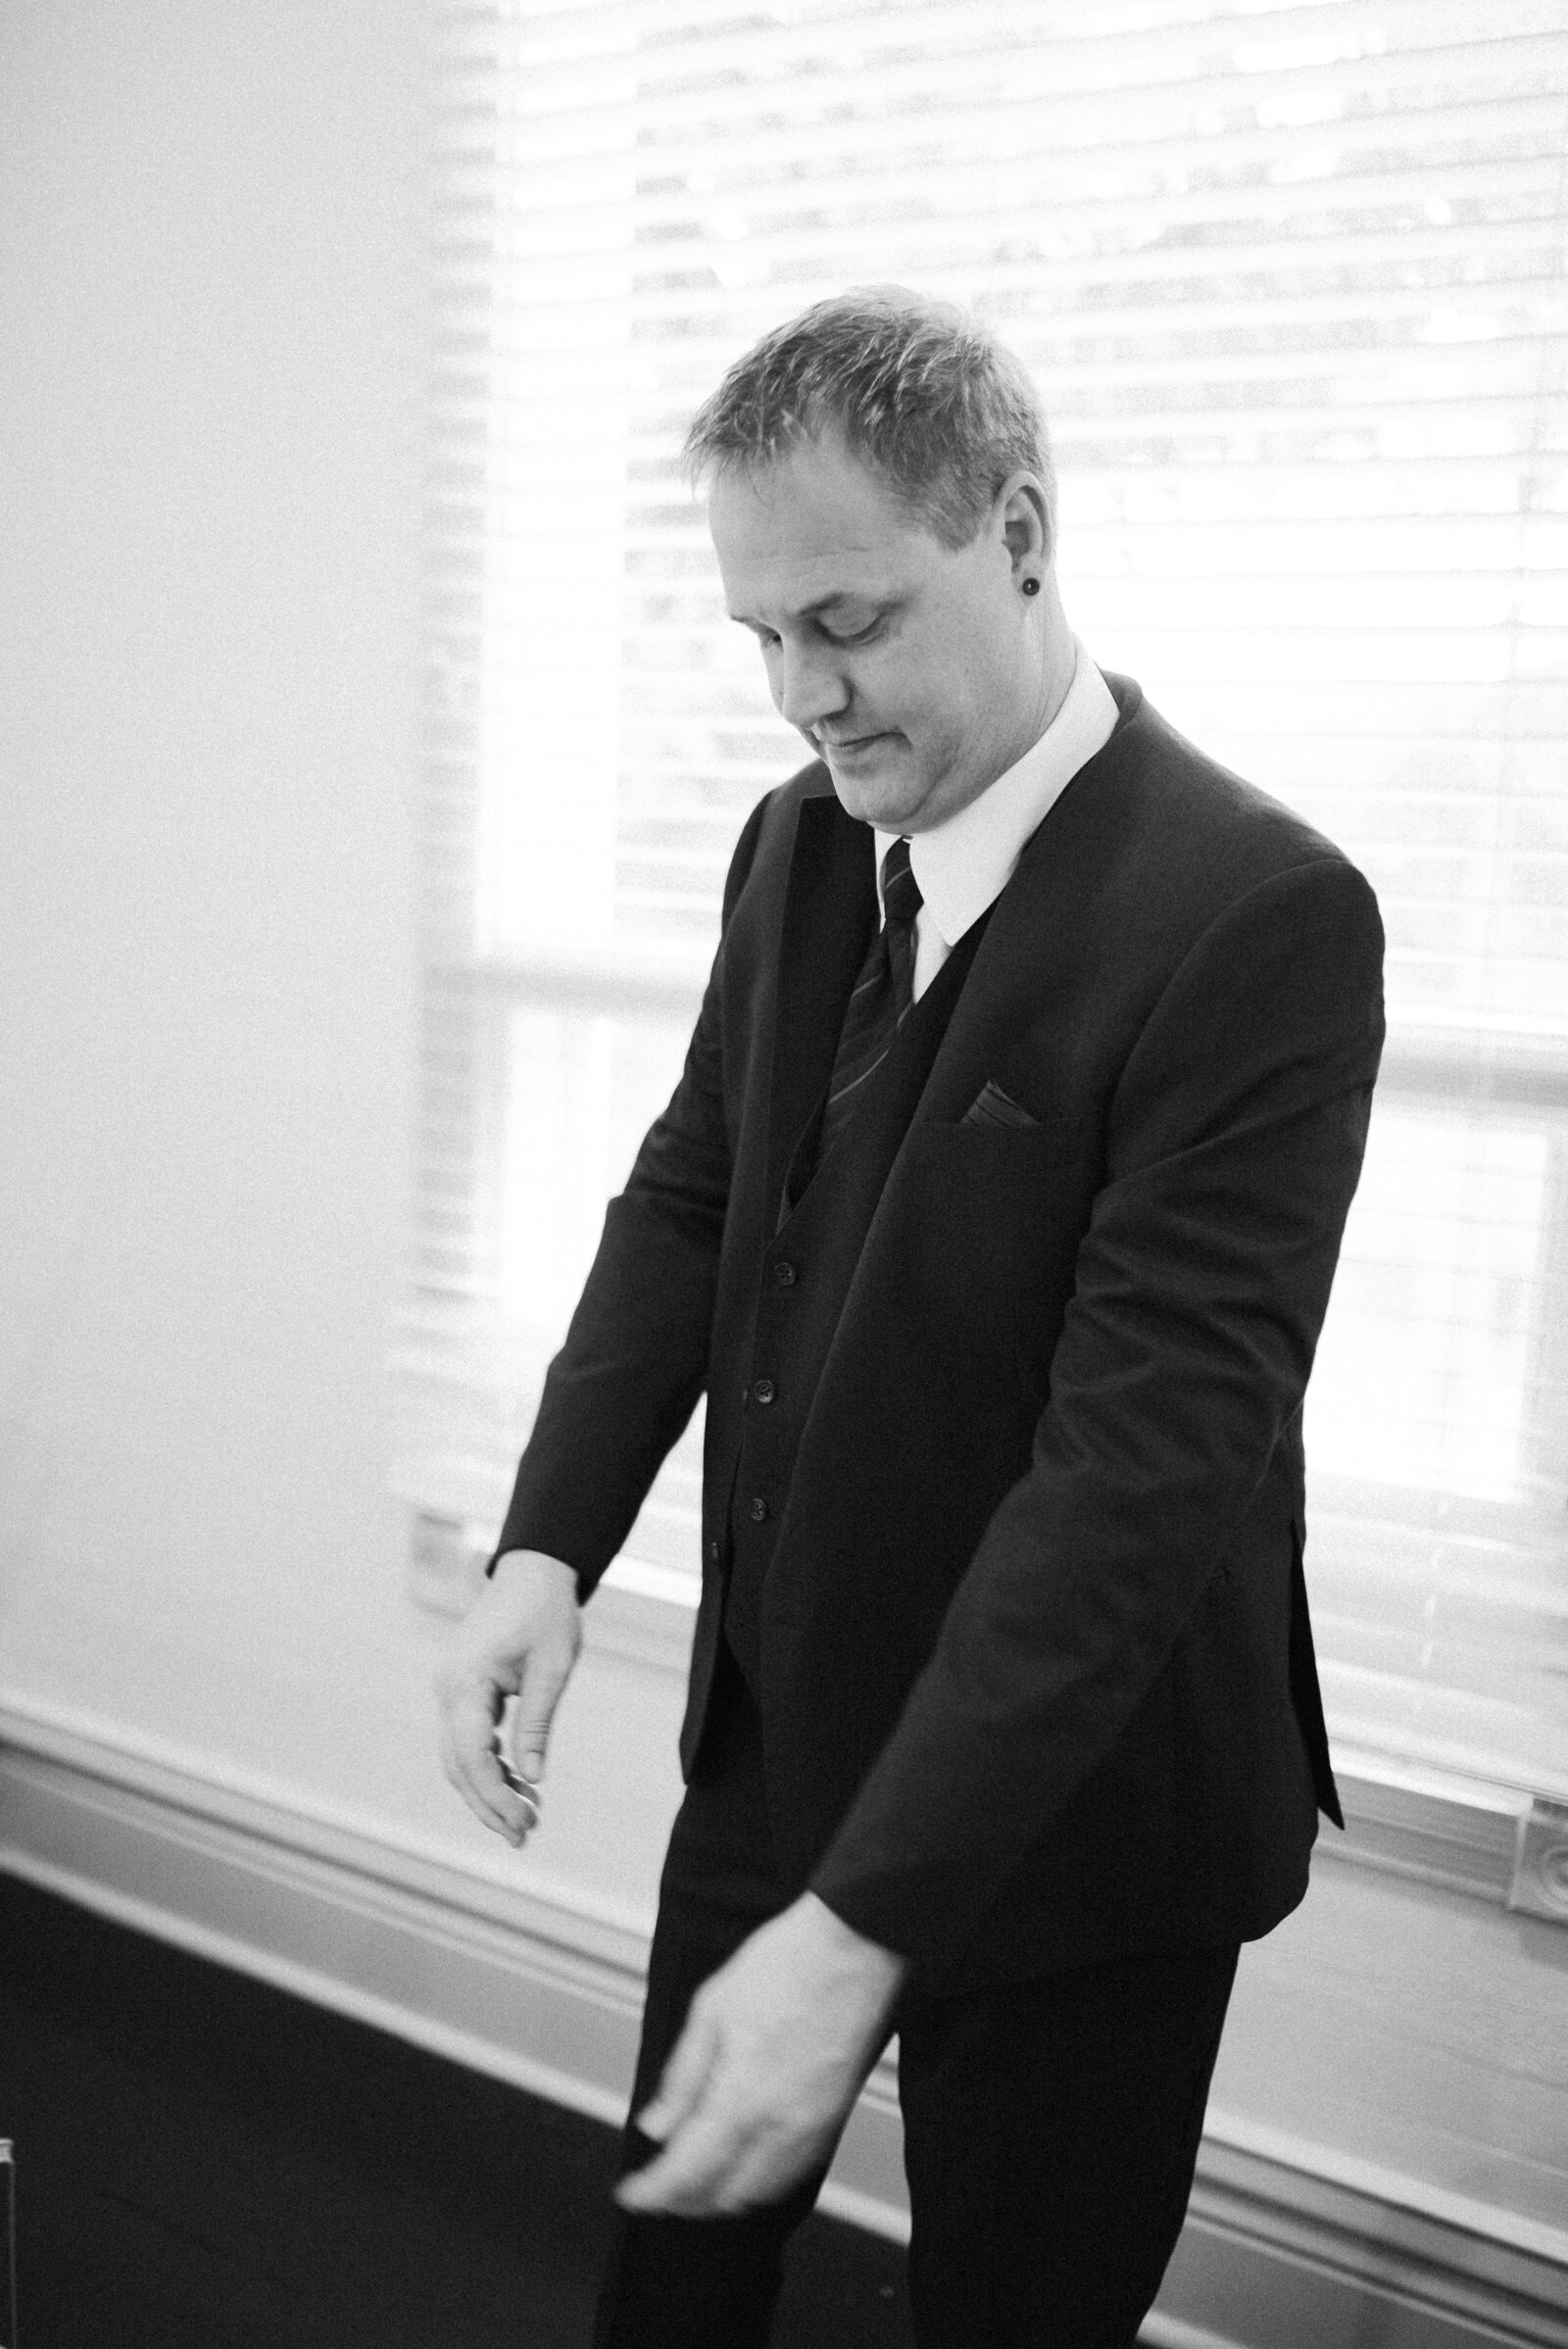 Groom adjusting his suit jacket sleeve in his dressing room